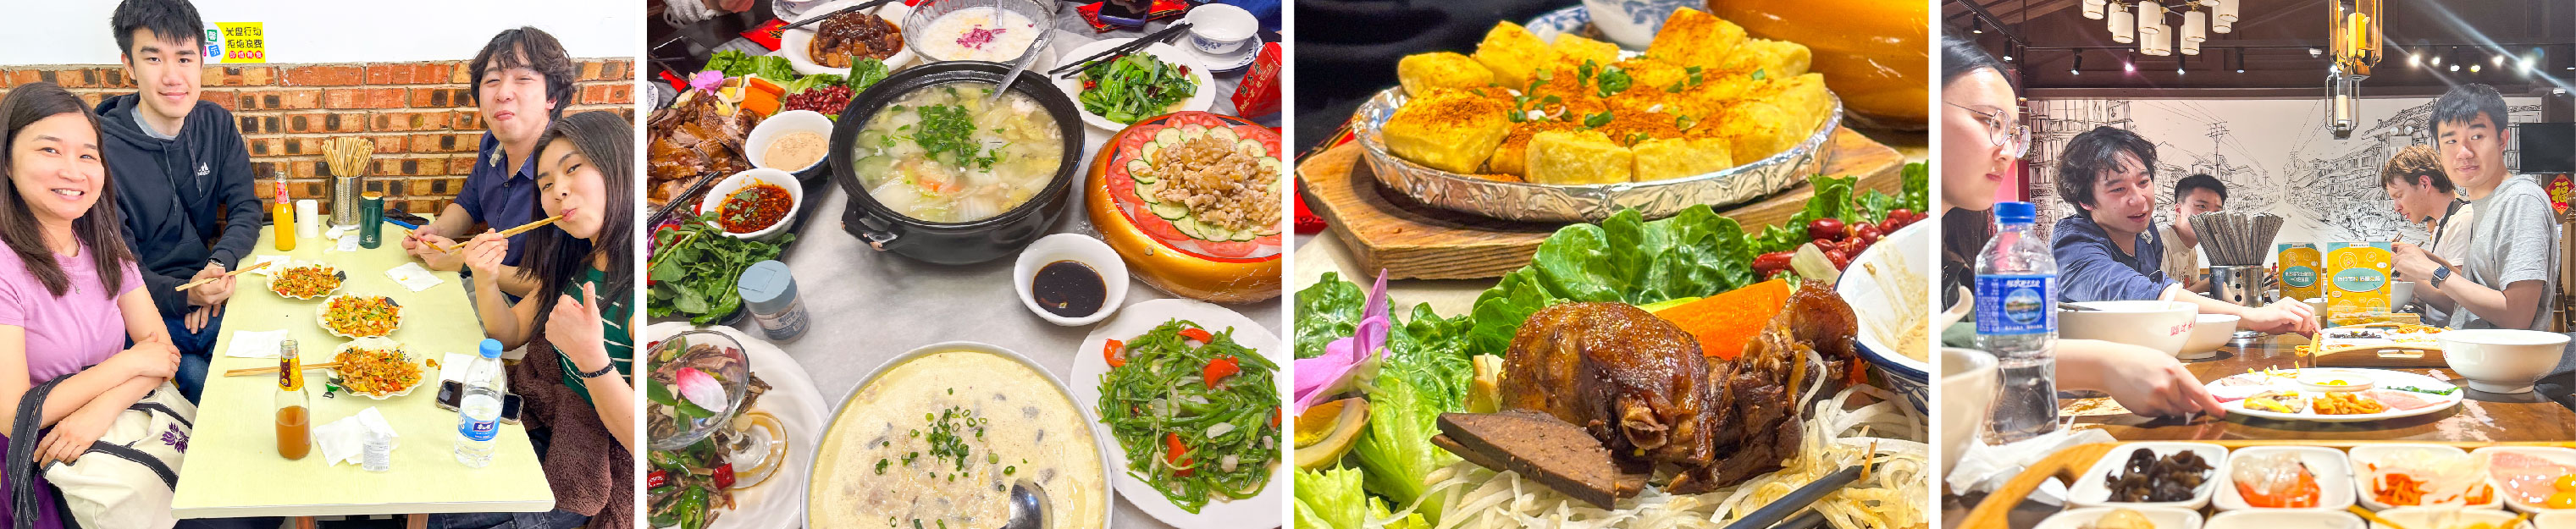 various Yunnan foods